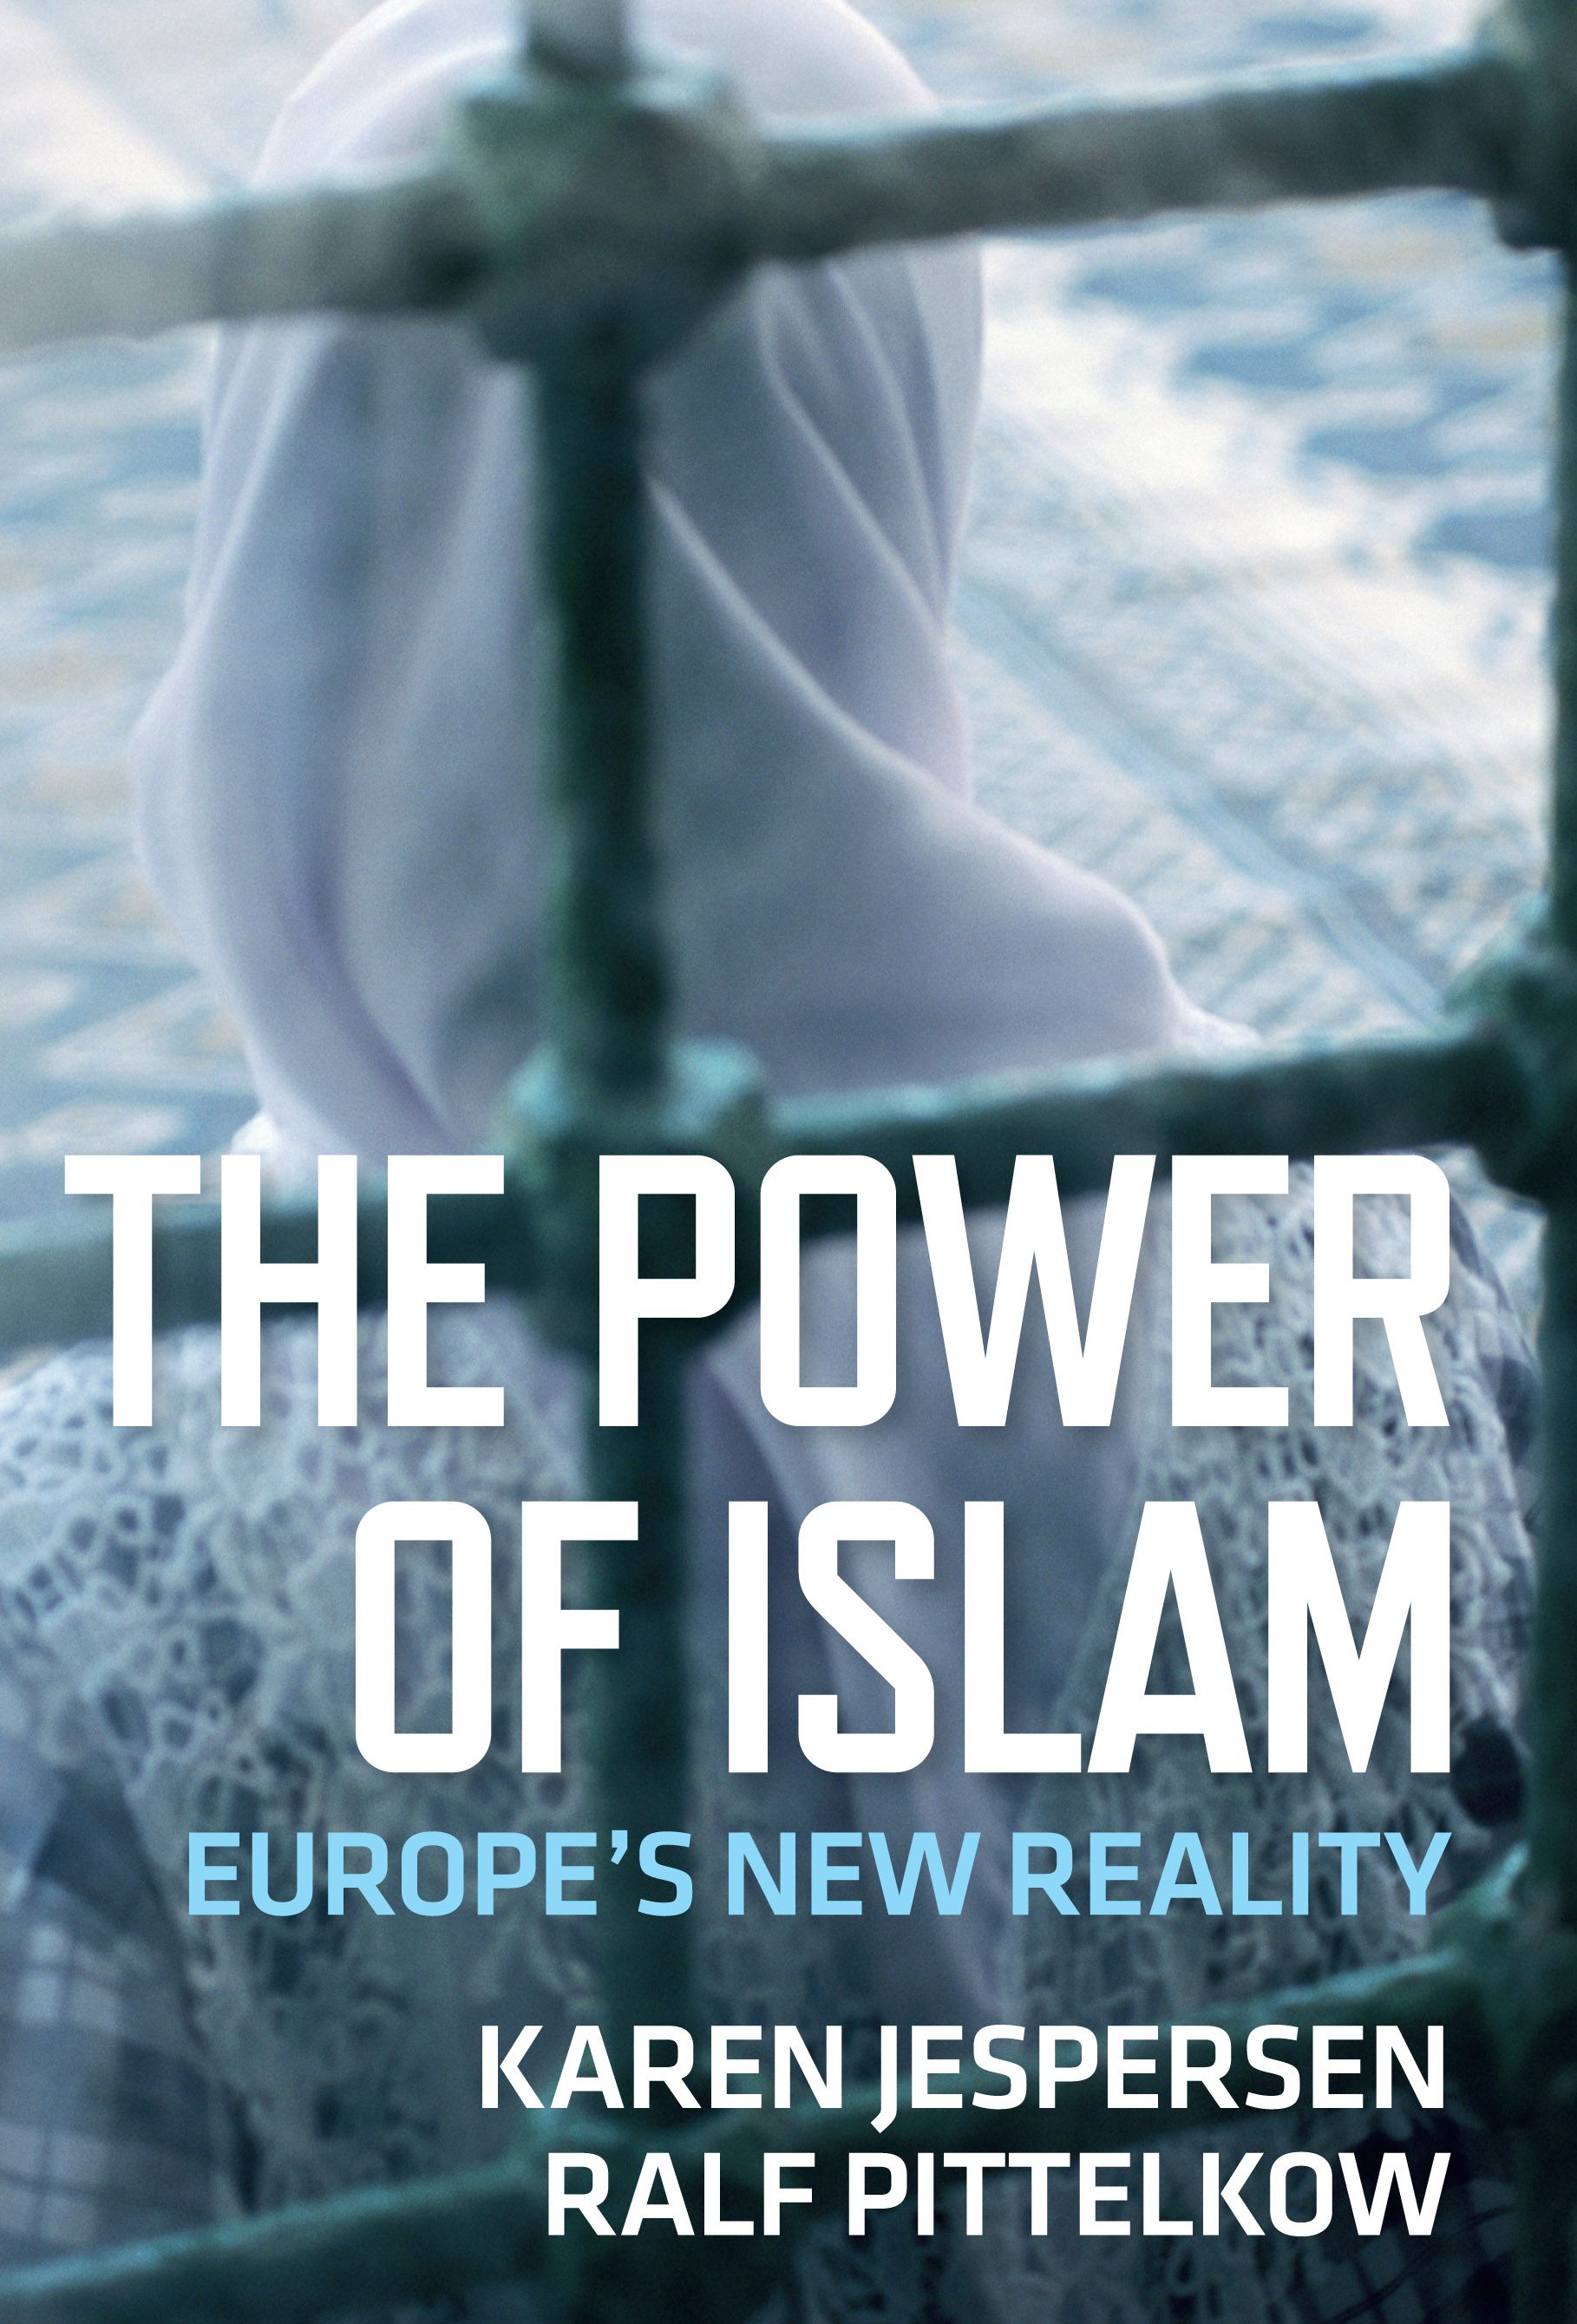 The Power of Islam, eBook by Karen Jespersen, Ralf Pittelkow